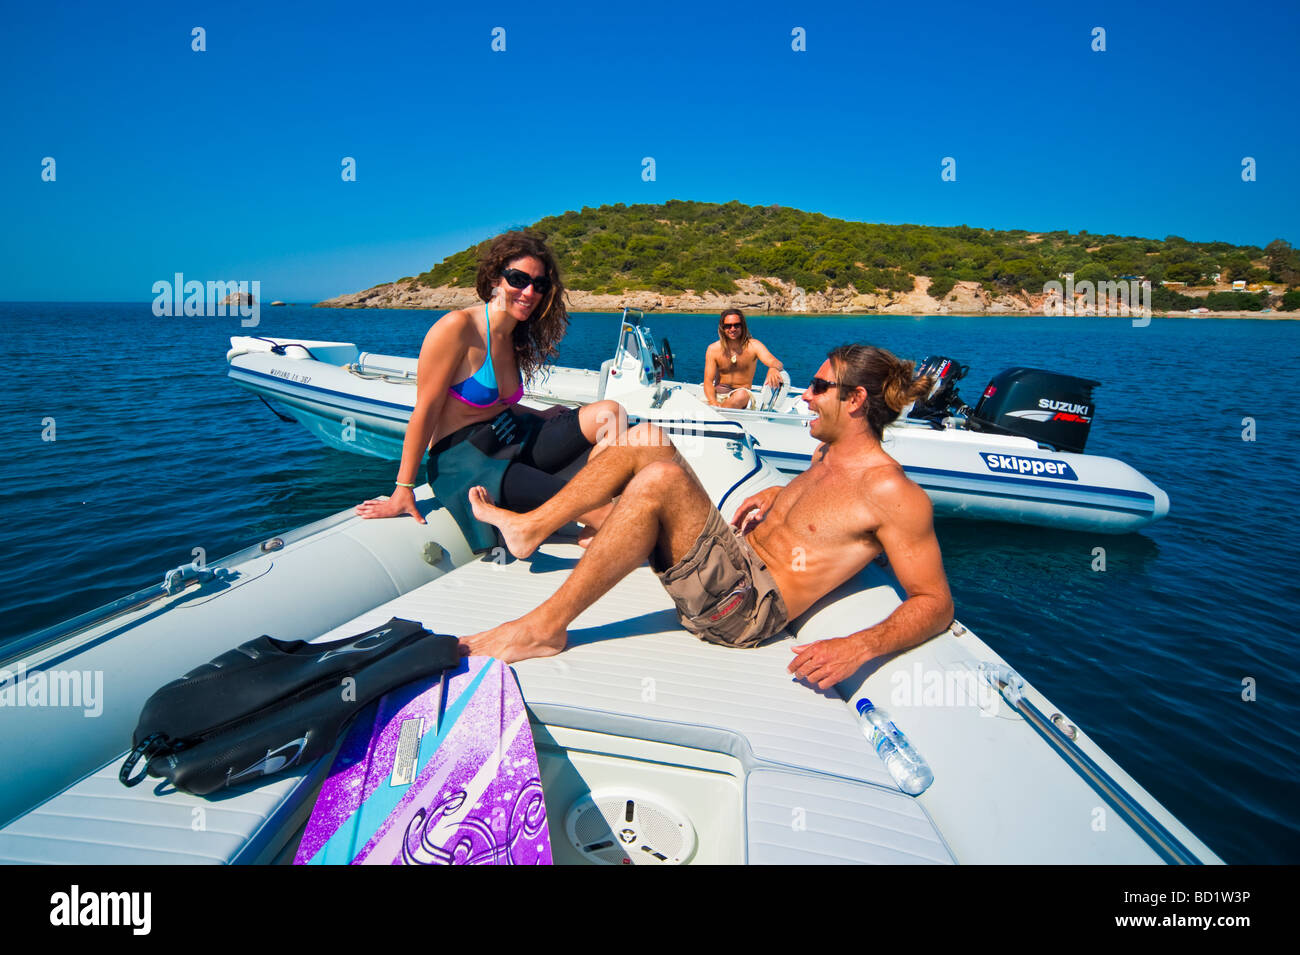 Fille et l'homme sur la proue d'un bateau gonflable en face d'une île Banque D'Images